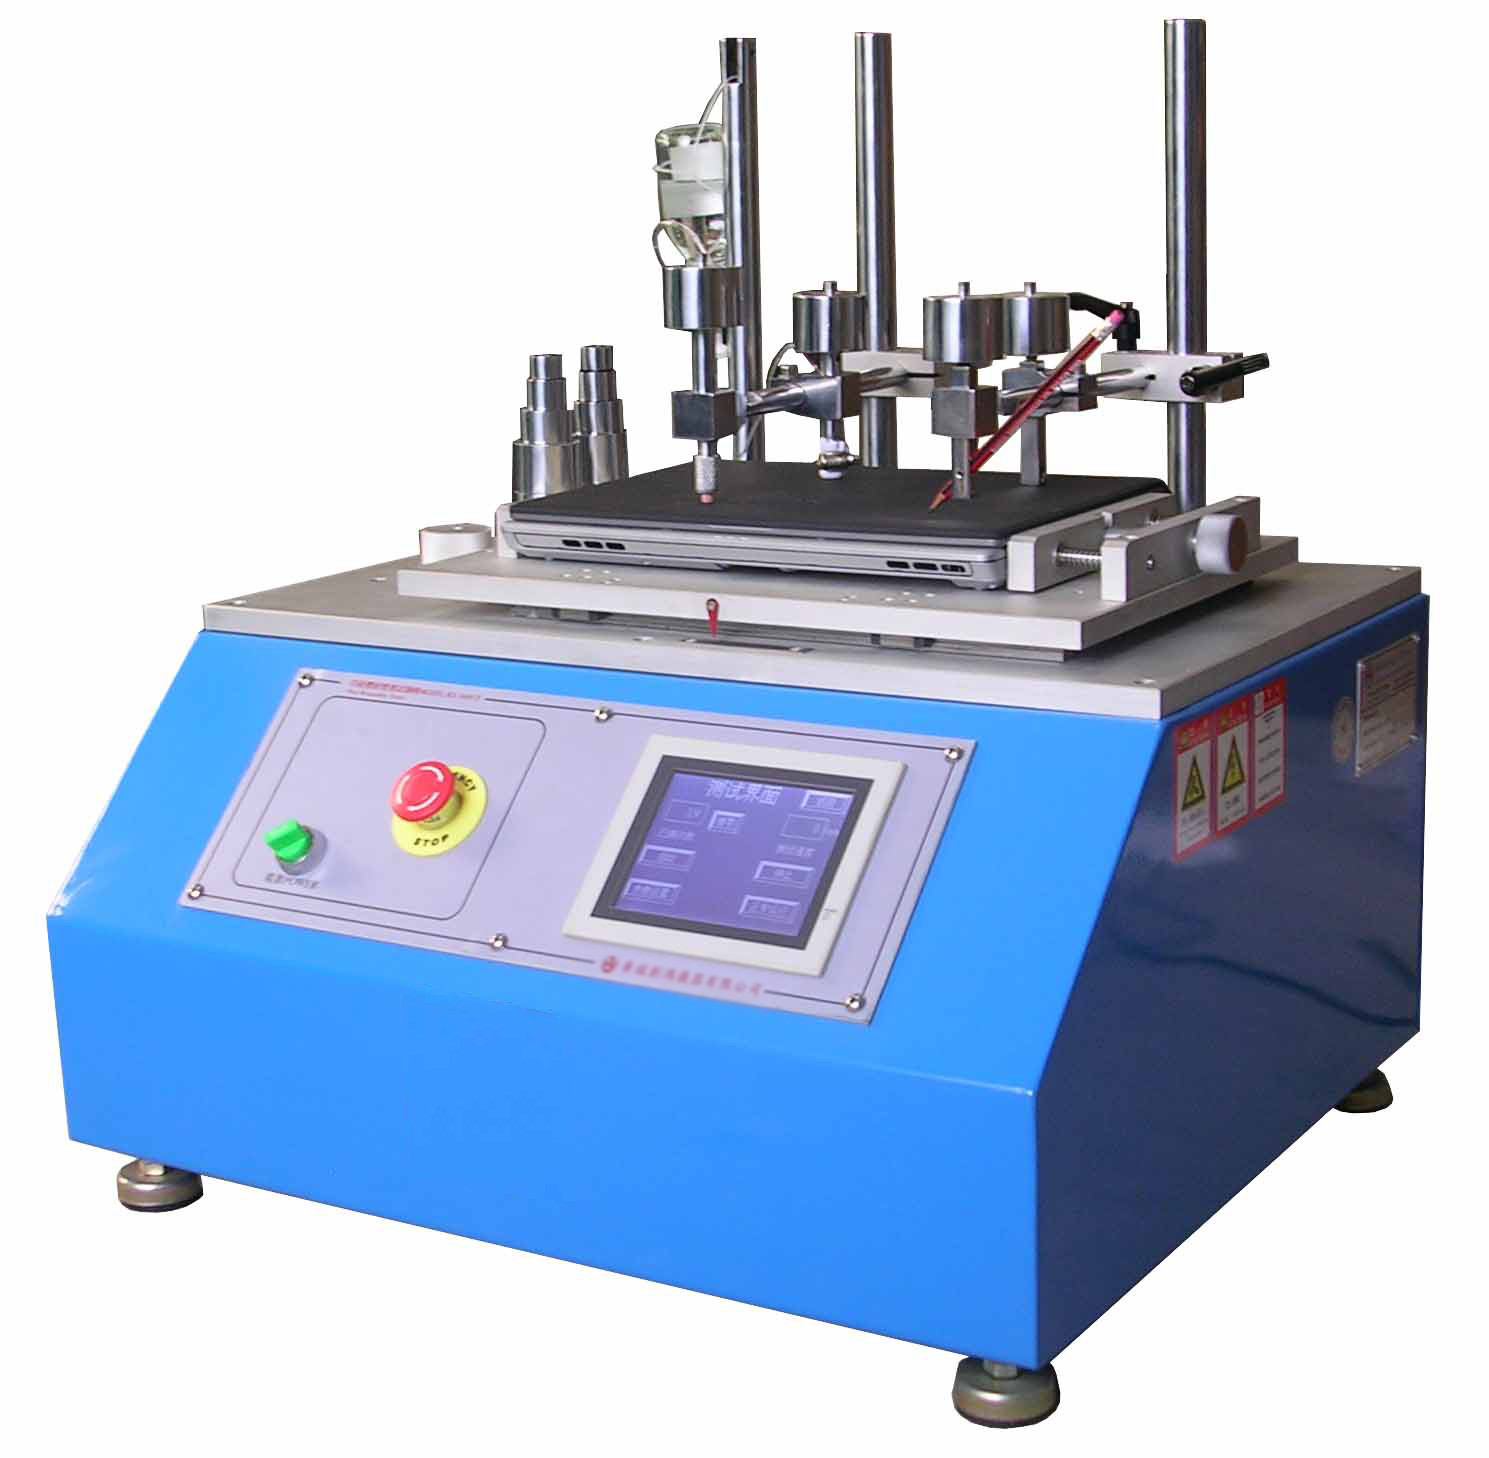 Silkscreen τυπωμένων υλών γδαρσίματος εξεταστική δοκιμή 80 γδαρσίματος μηχανών αντι gf - gf 1000